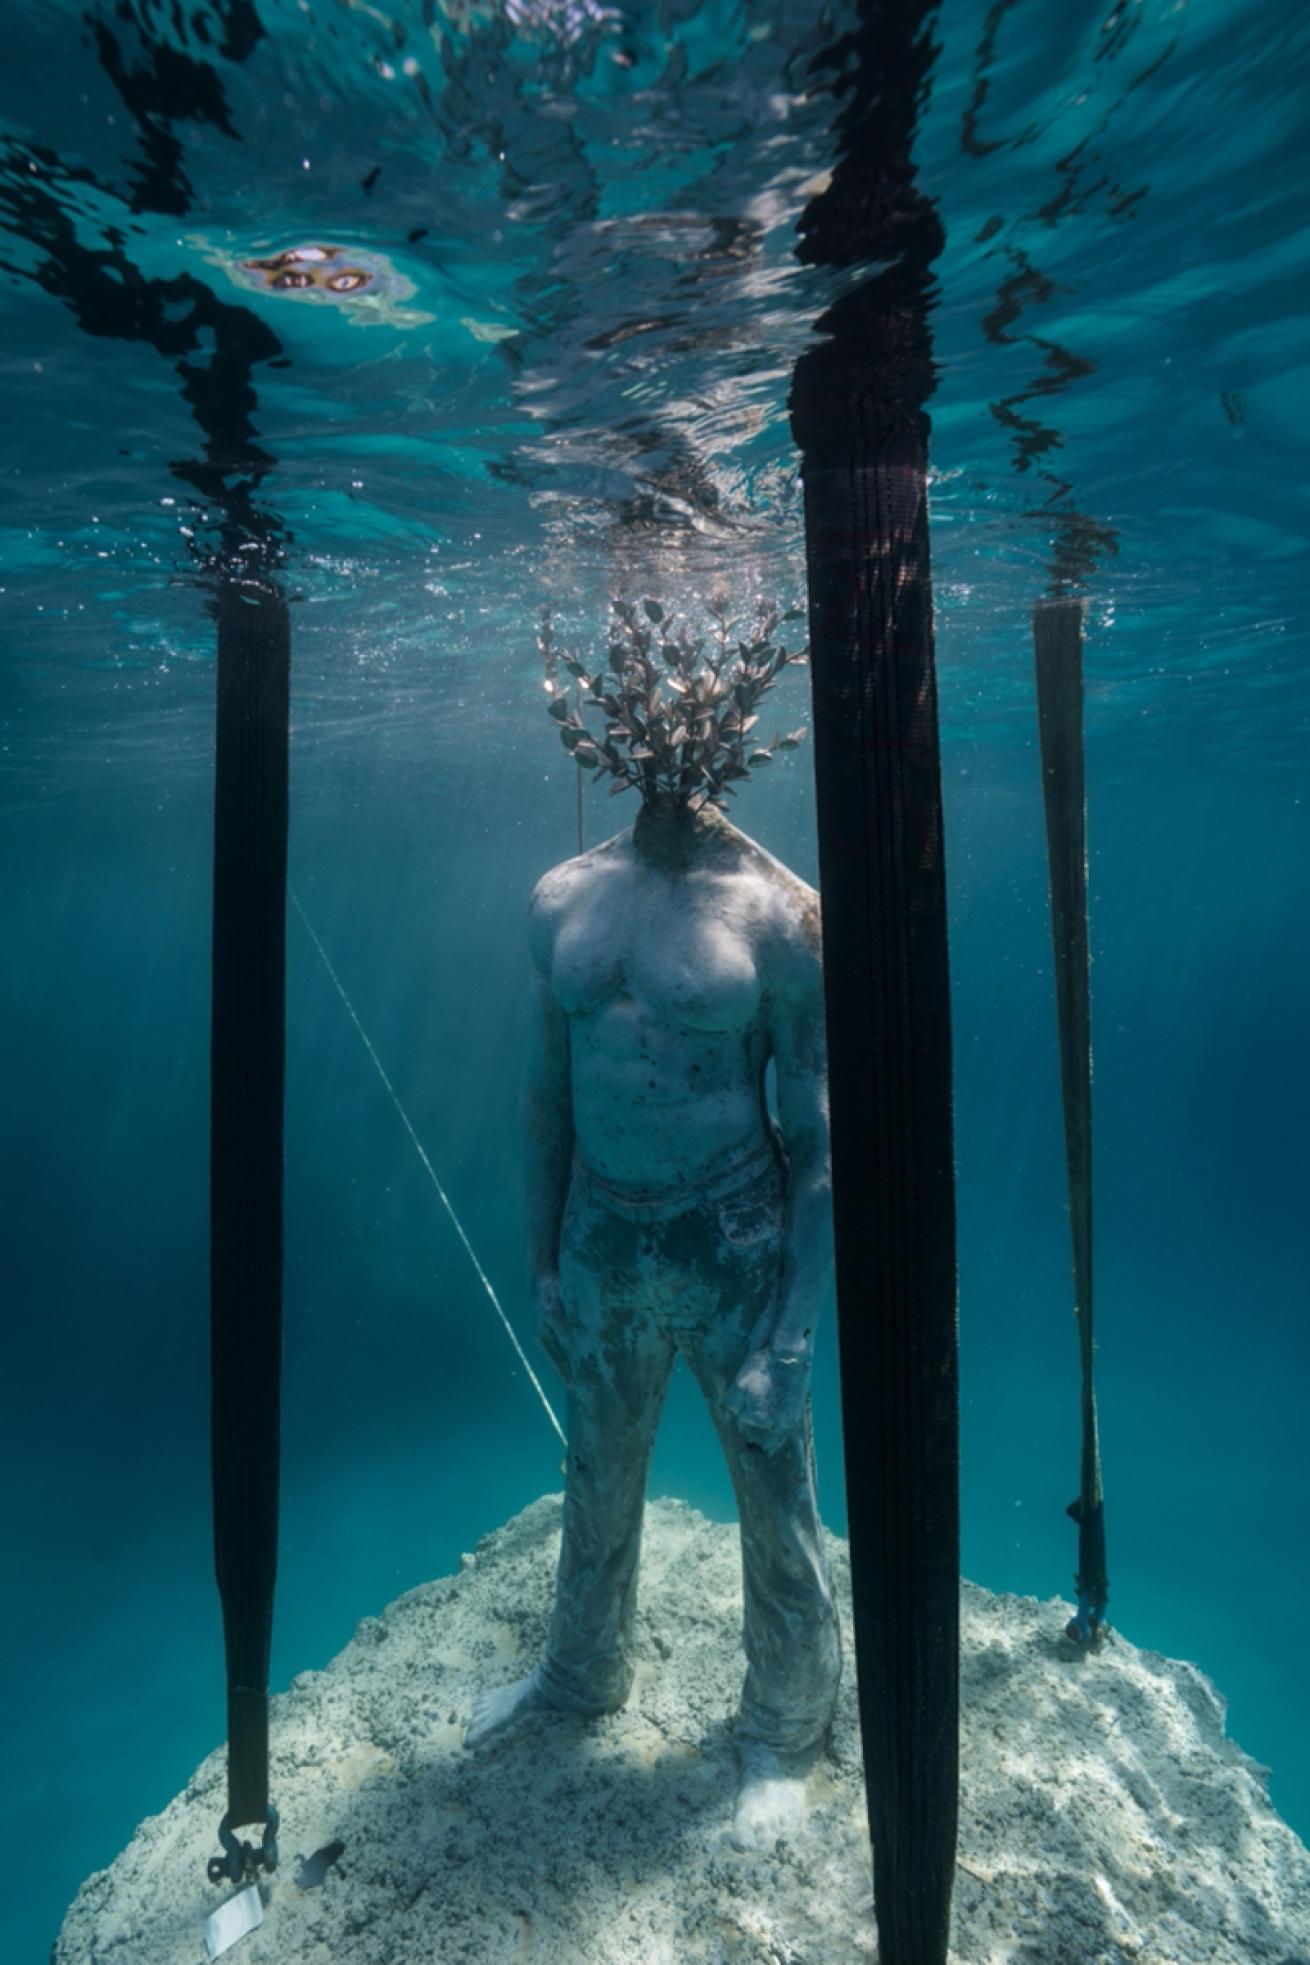 Underwater sculpture installation